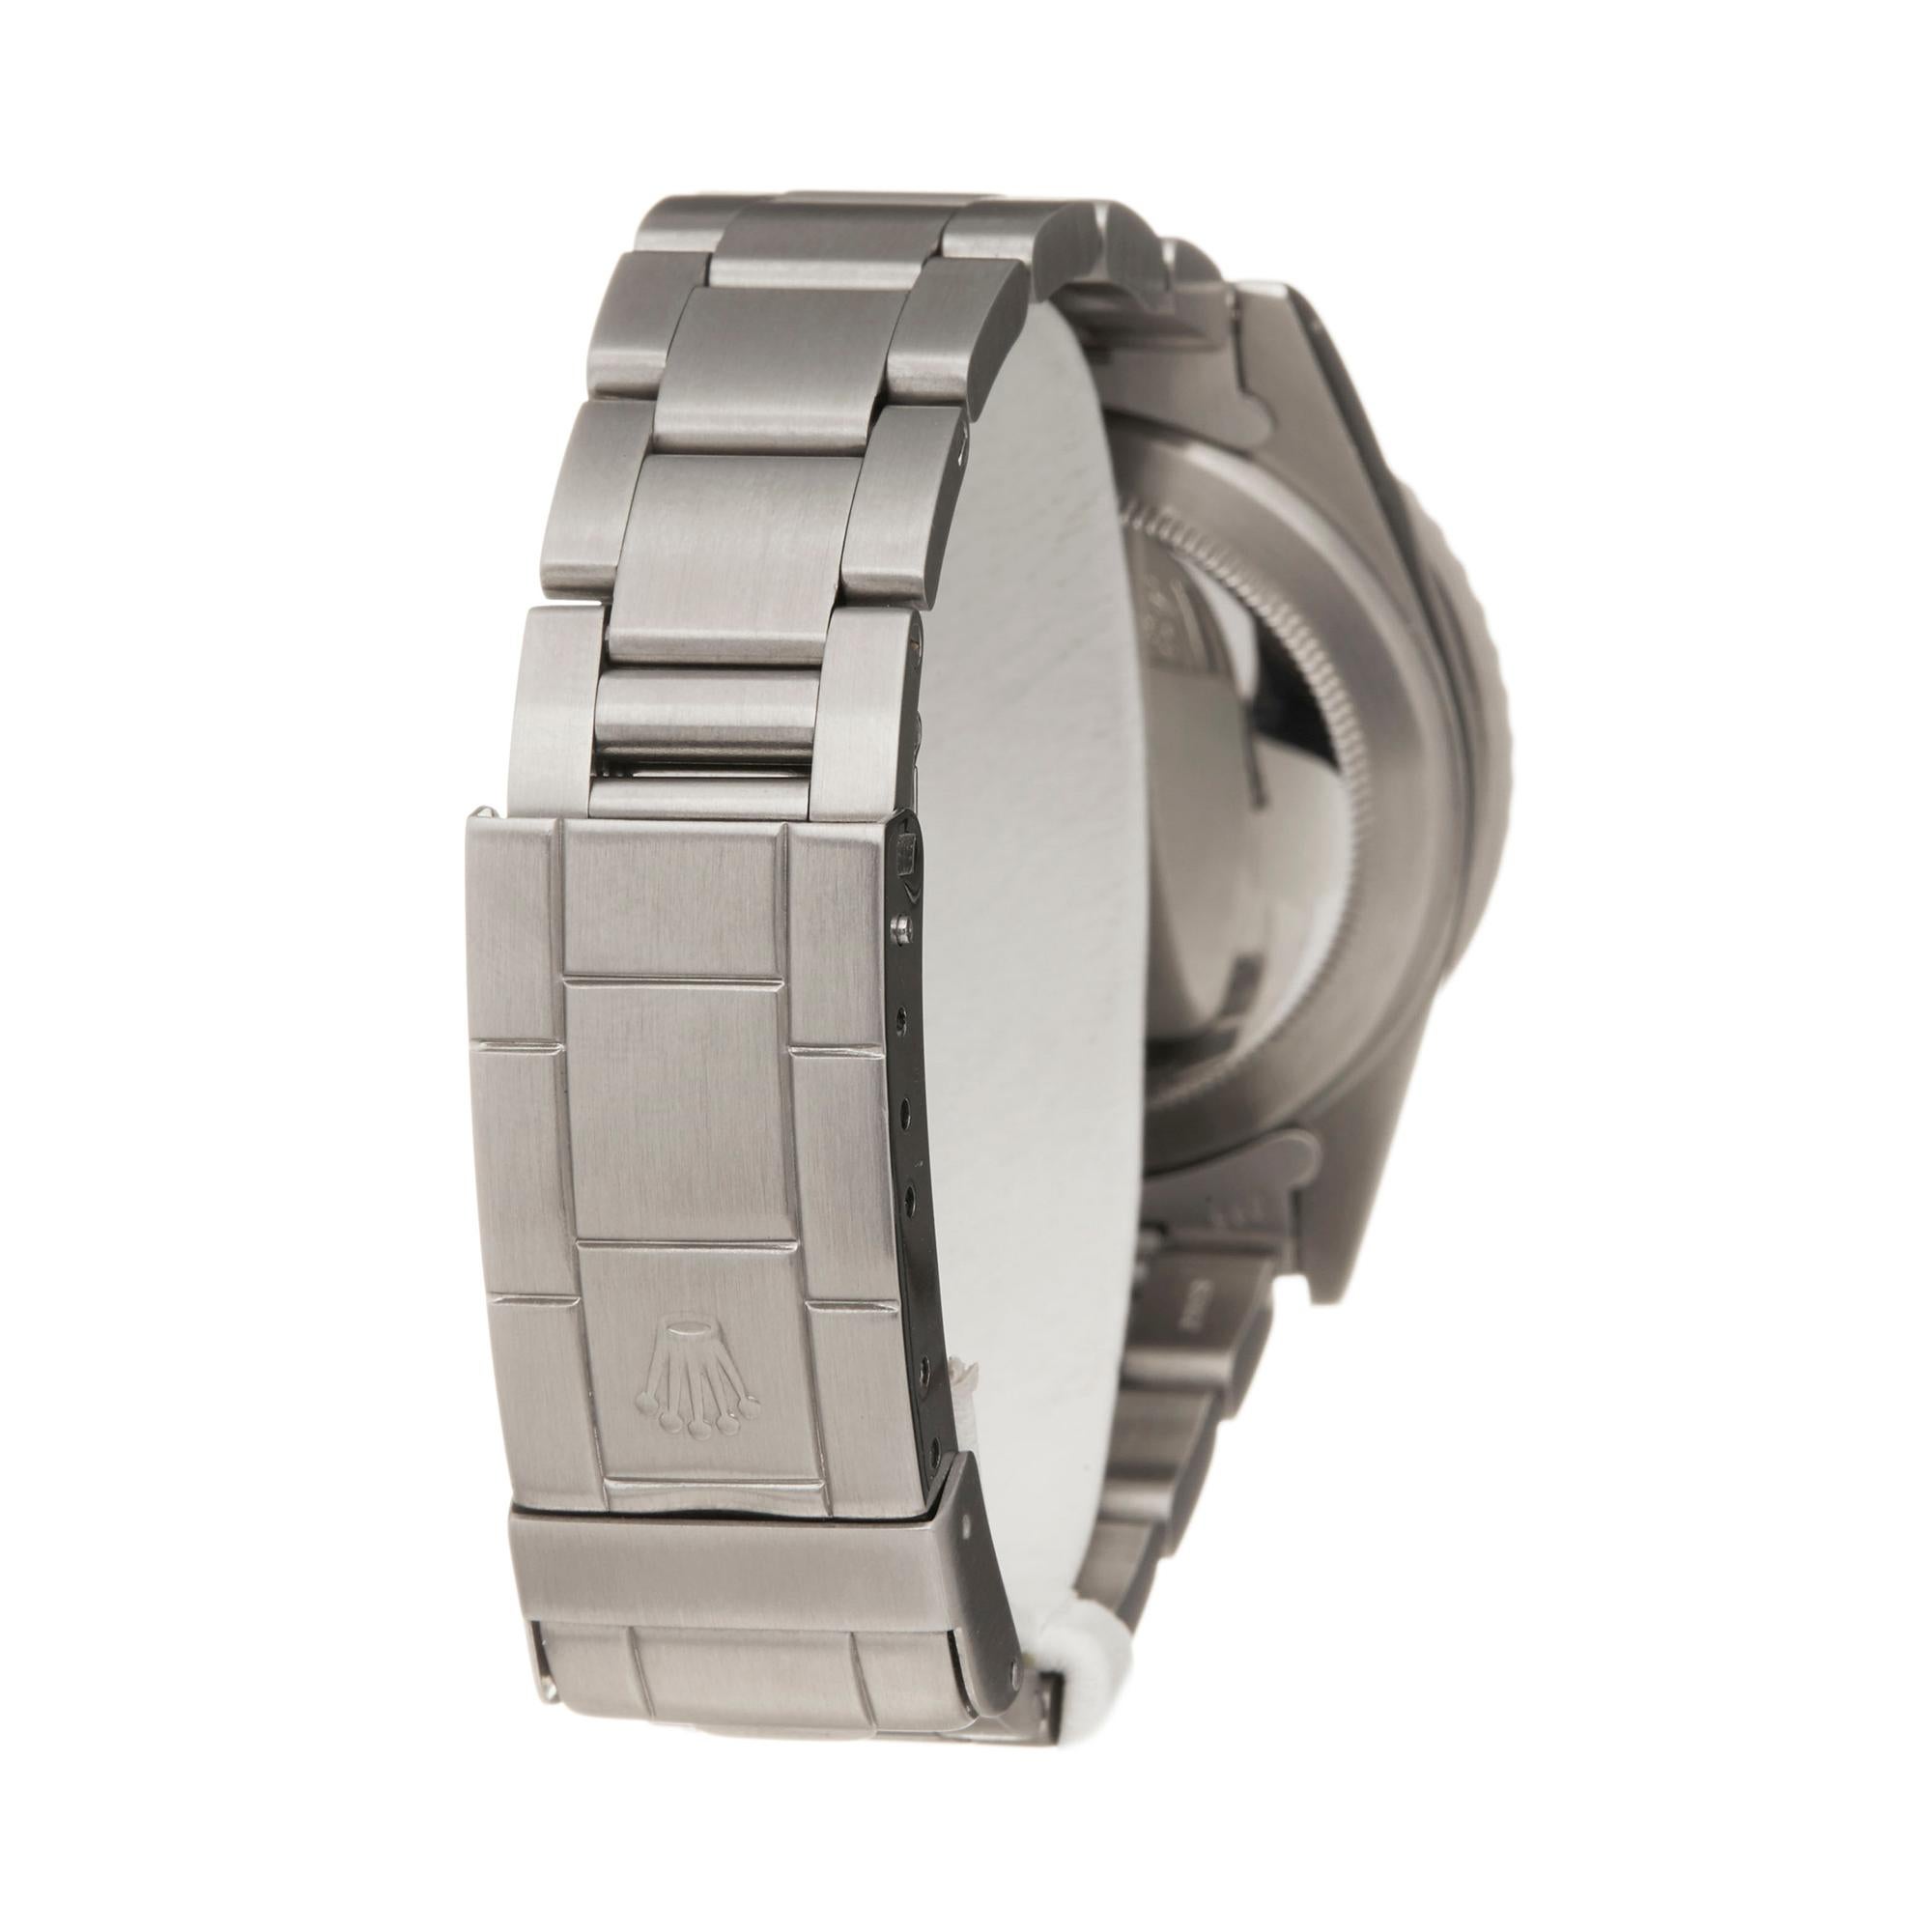 Rolex Submariner Non Date Stainless Steel 5513 Wristwatch 1